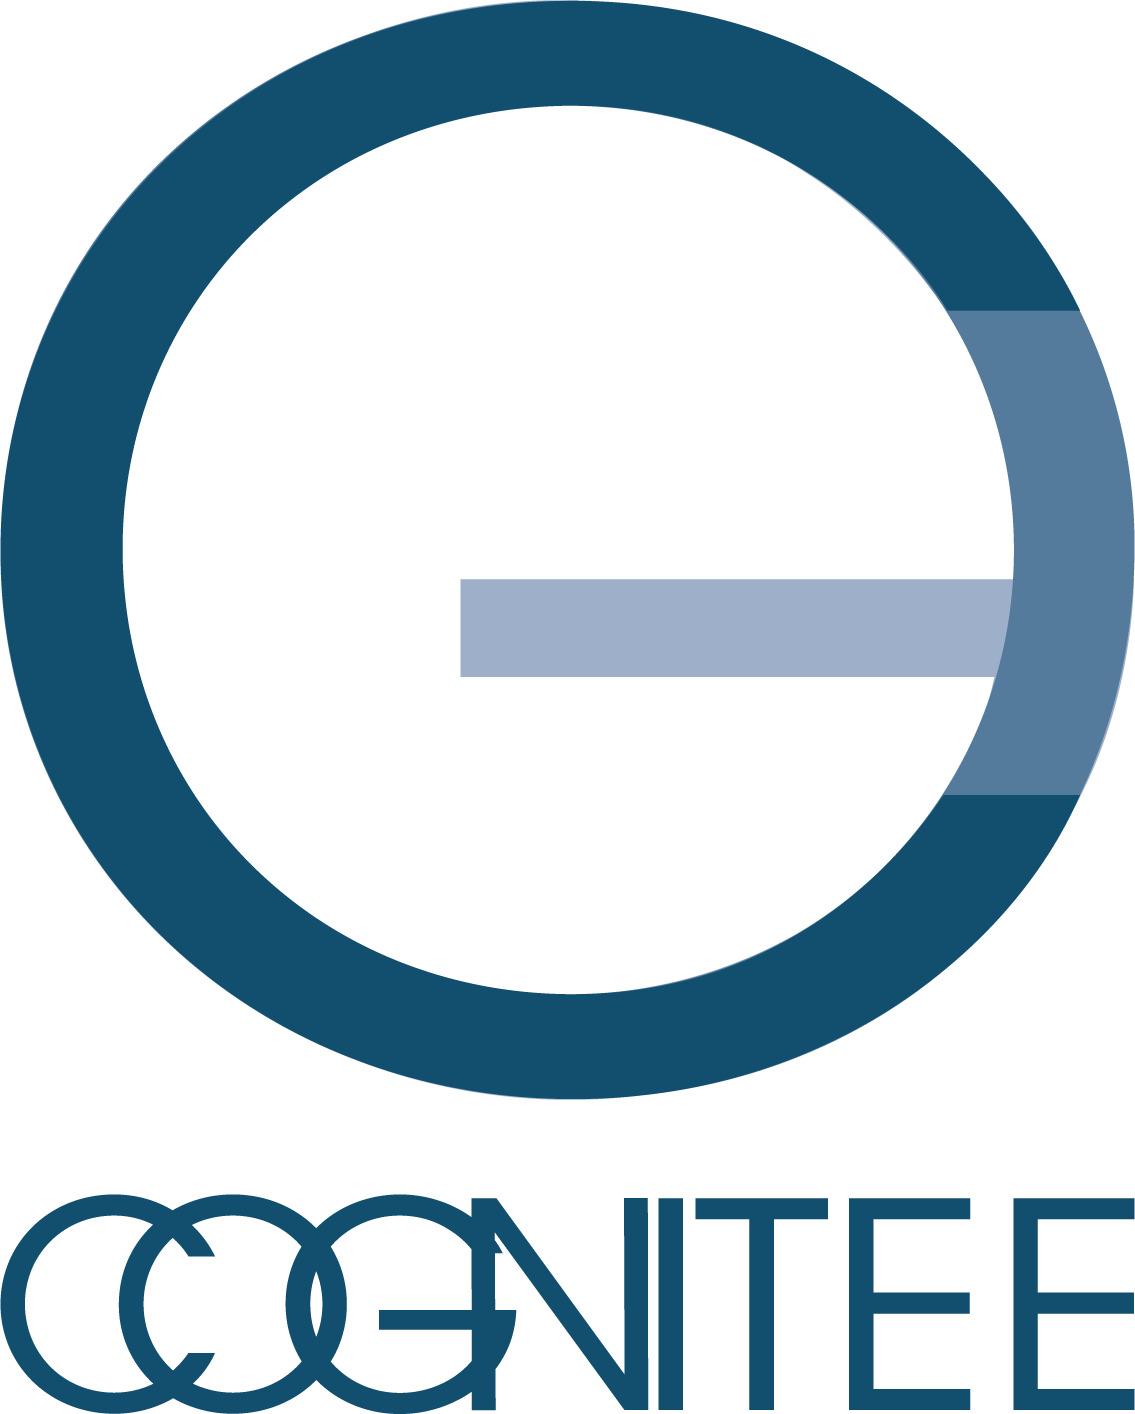 コグニティ株式会社 英語表記 Cognitee Inc のサービス セミナー情報 人事のプロを支援する Hrプロ